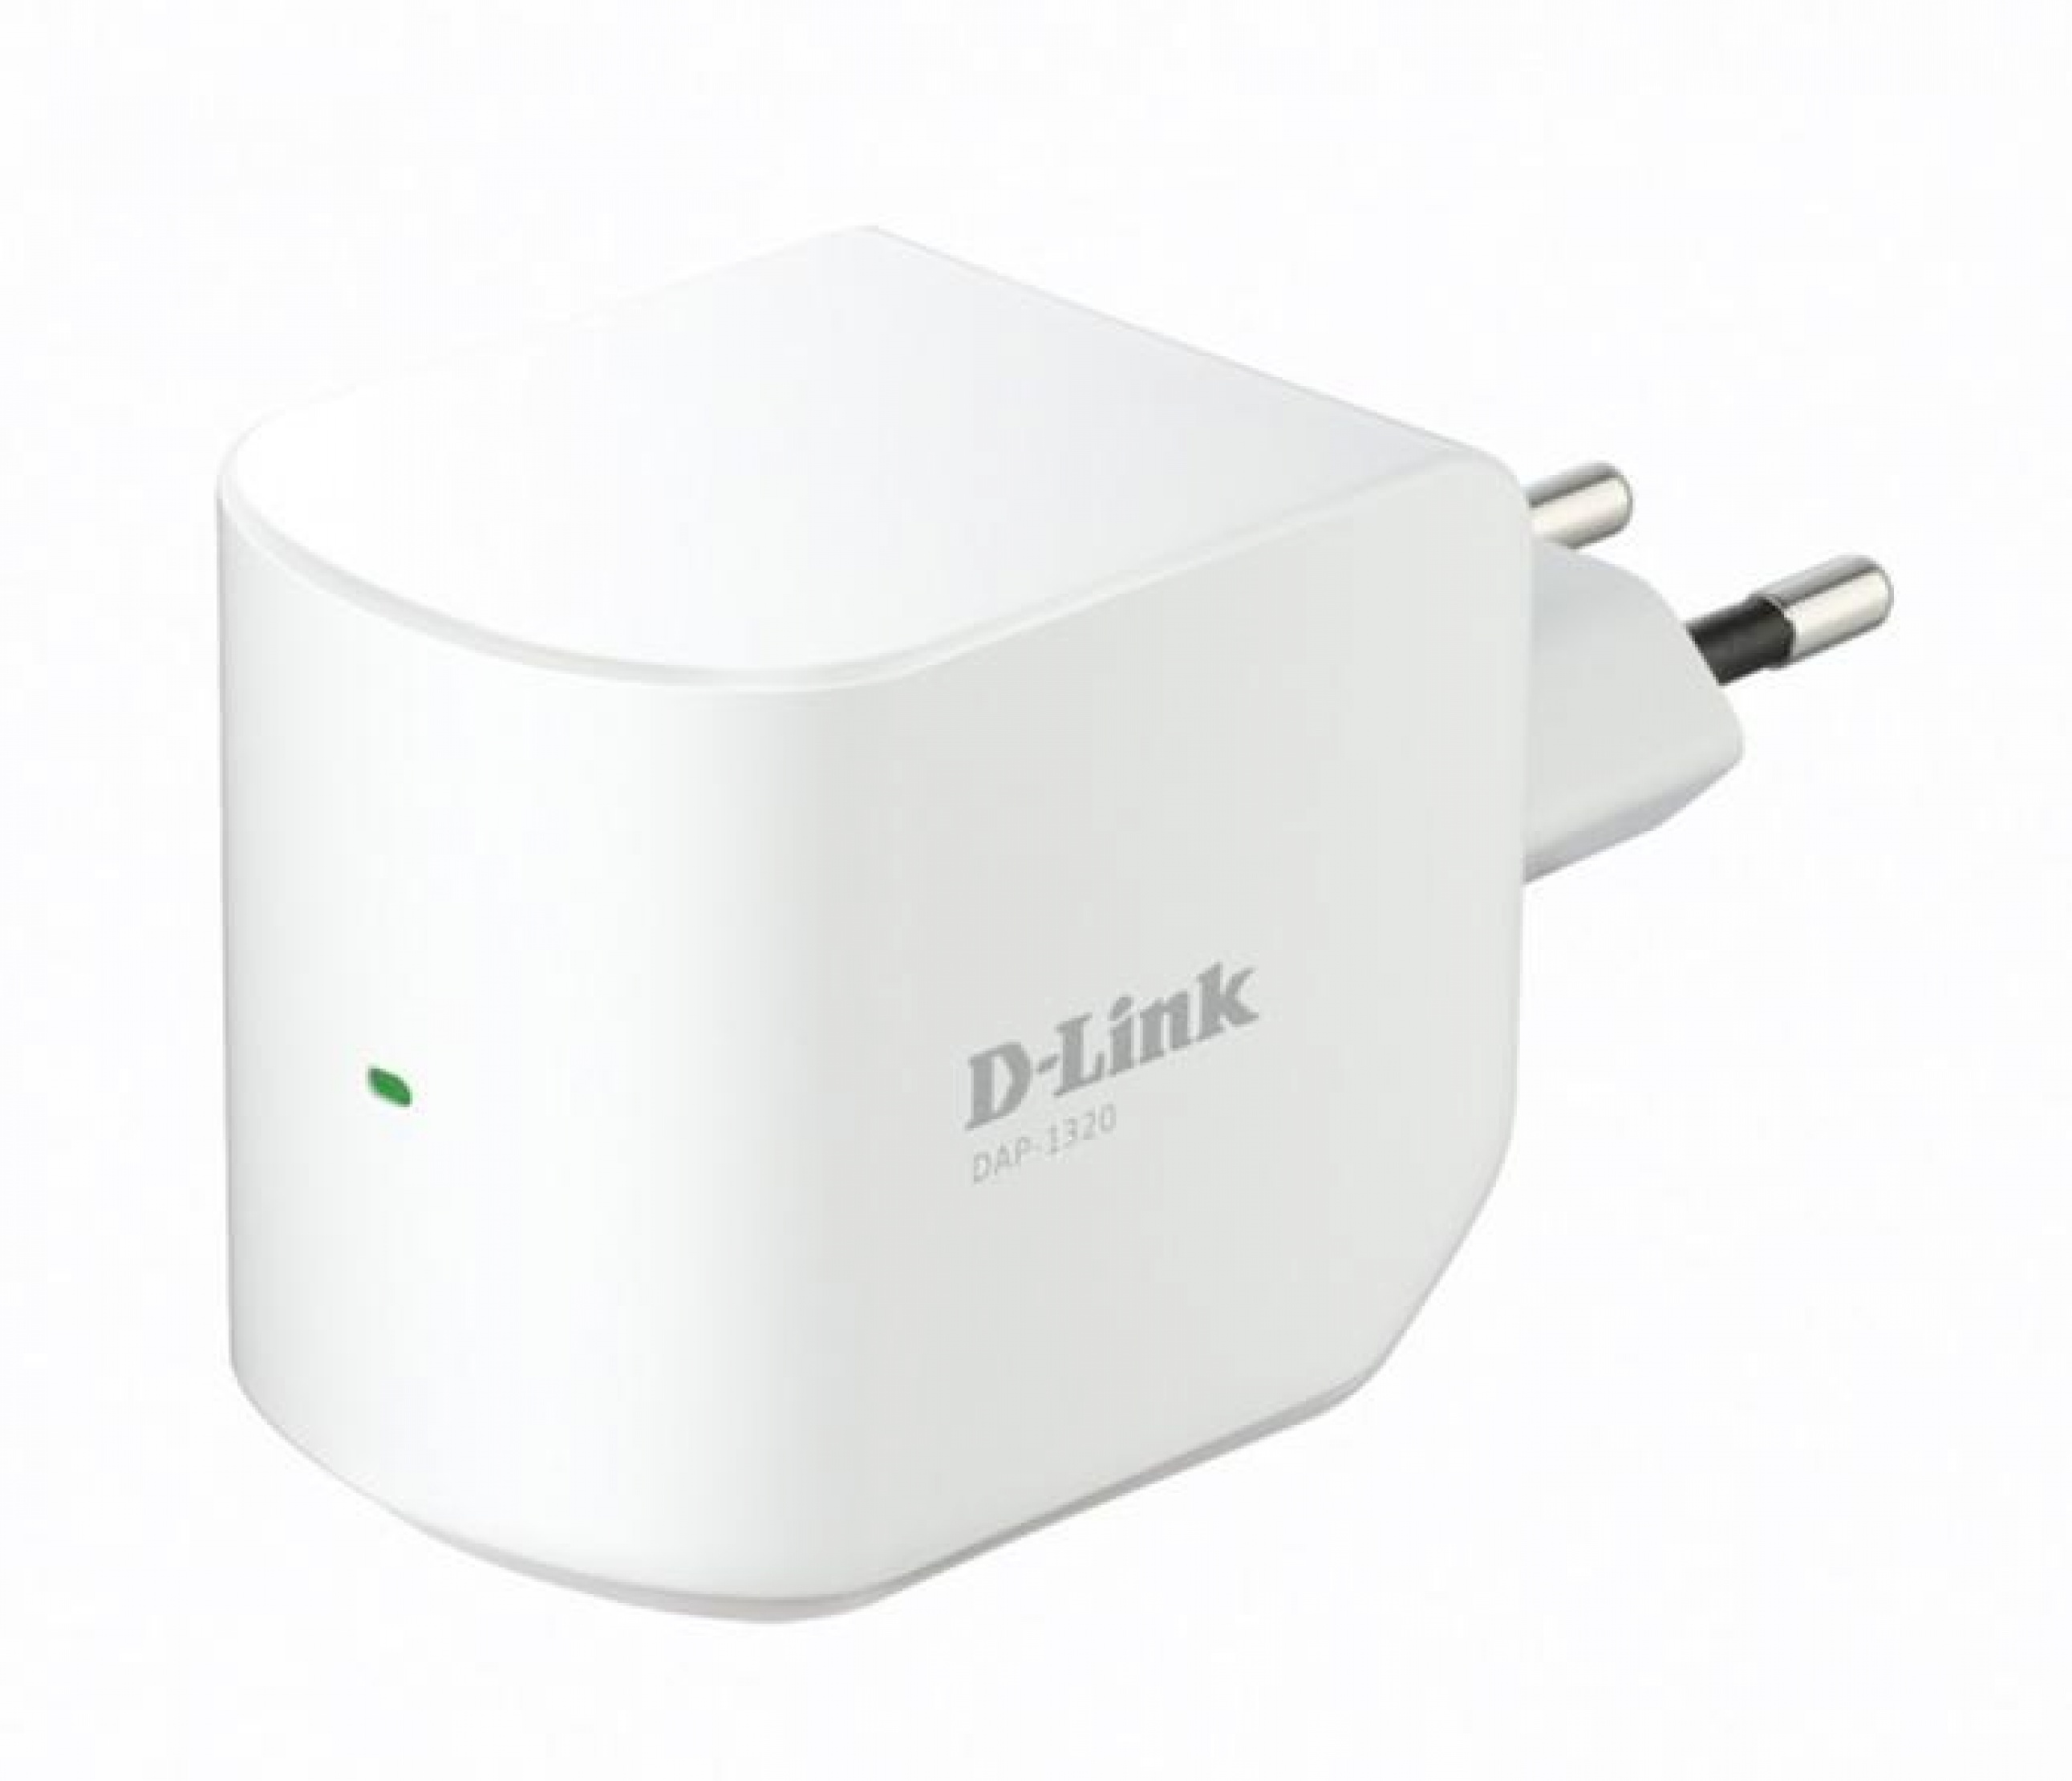 Range extender wireless N300 300 Mb/s, D-Link DAP-1320